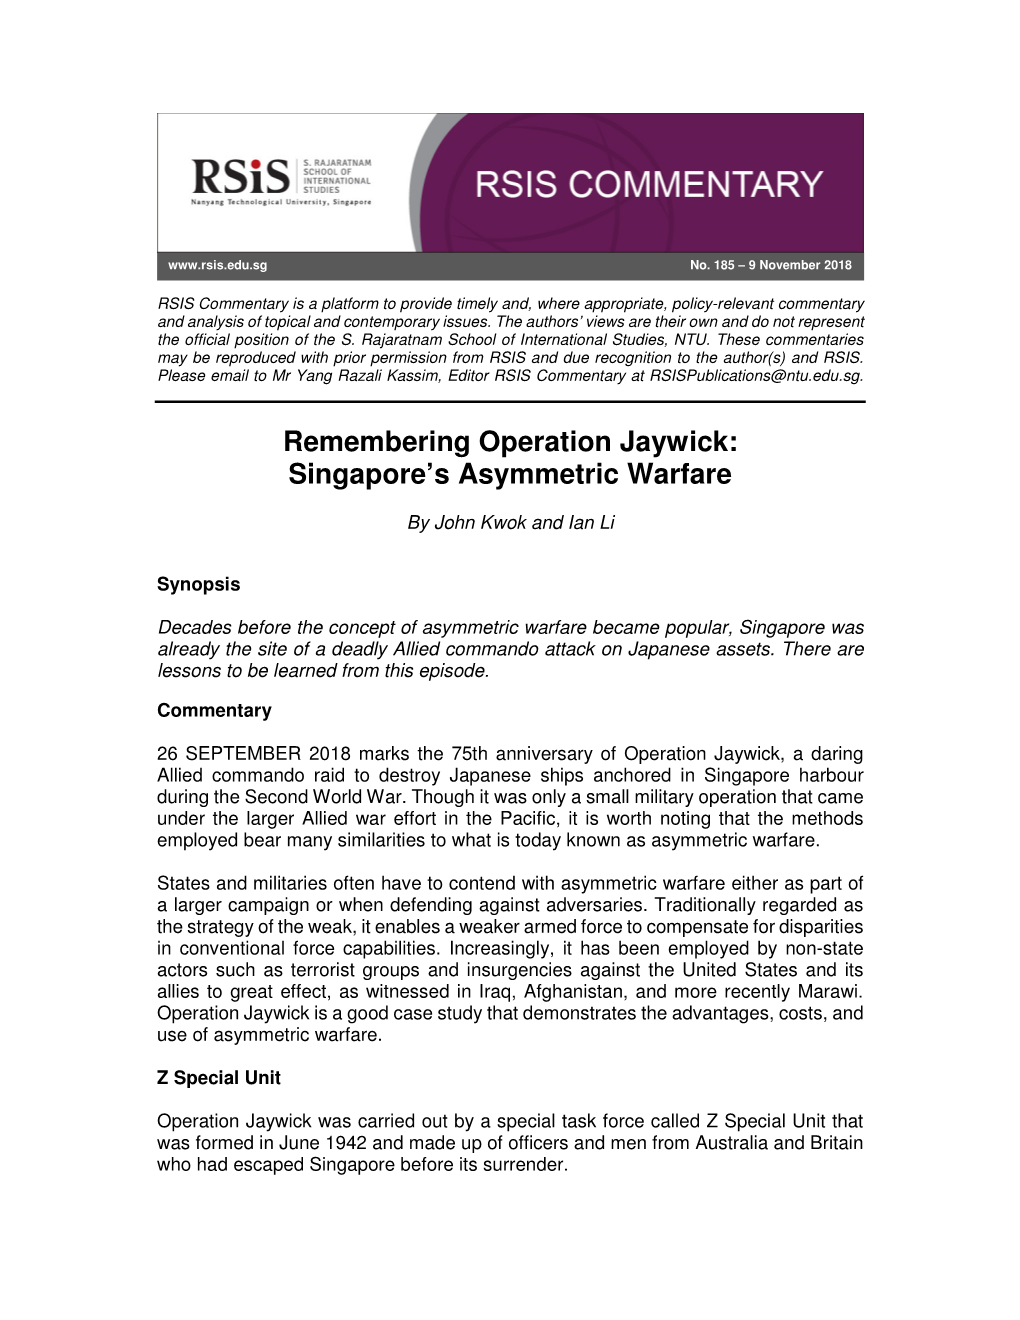 Remembering Operation Jaywick: Singapore's Asymmetric Warfare